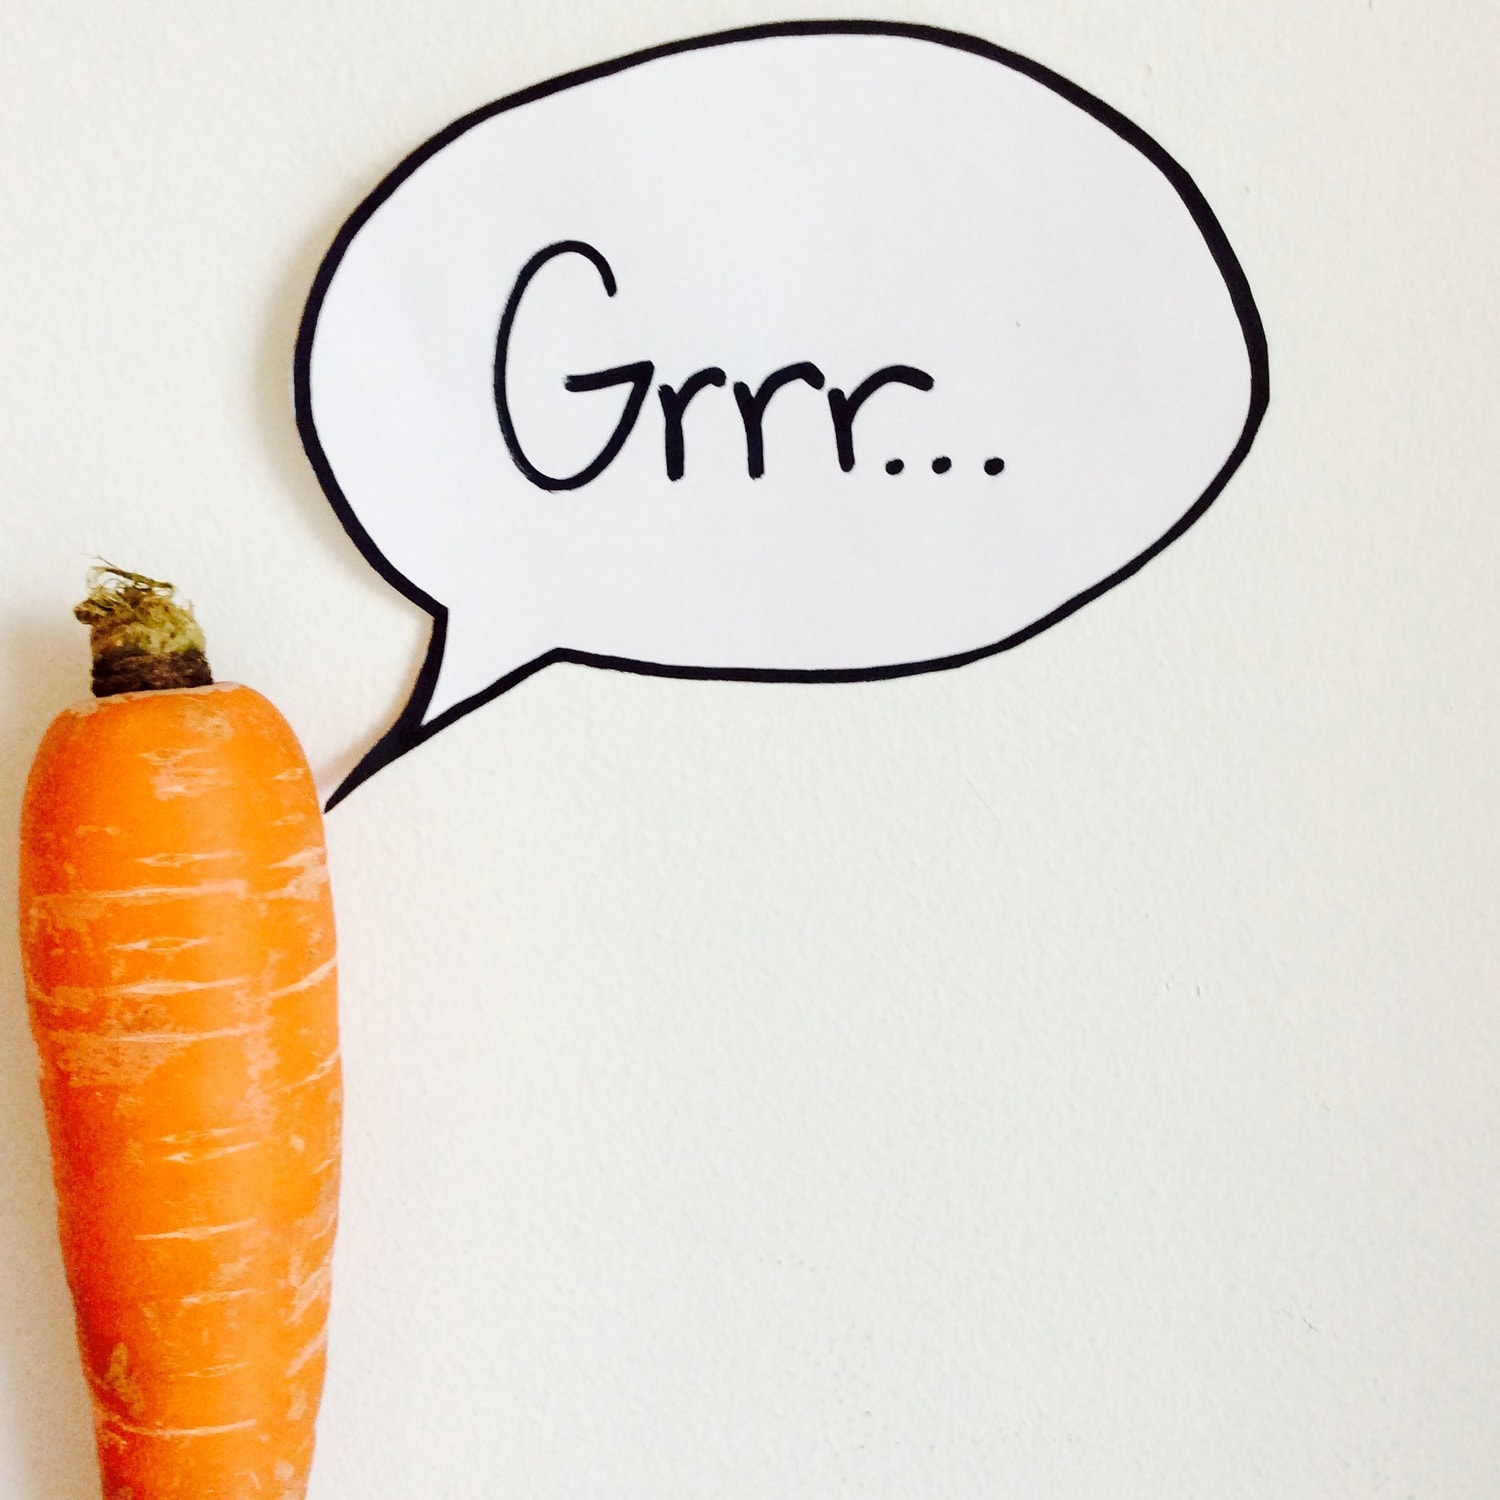 carrot saying GRRR